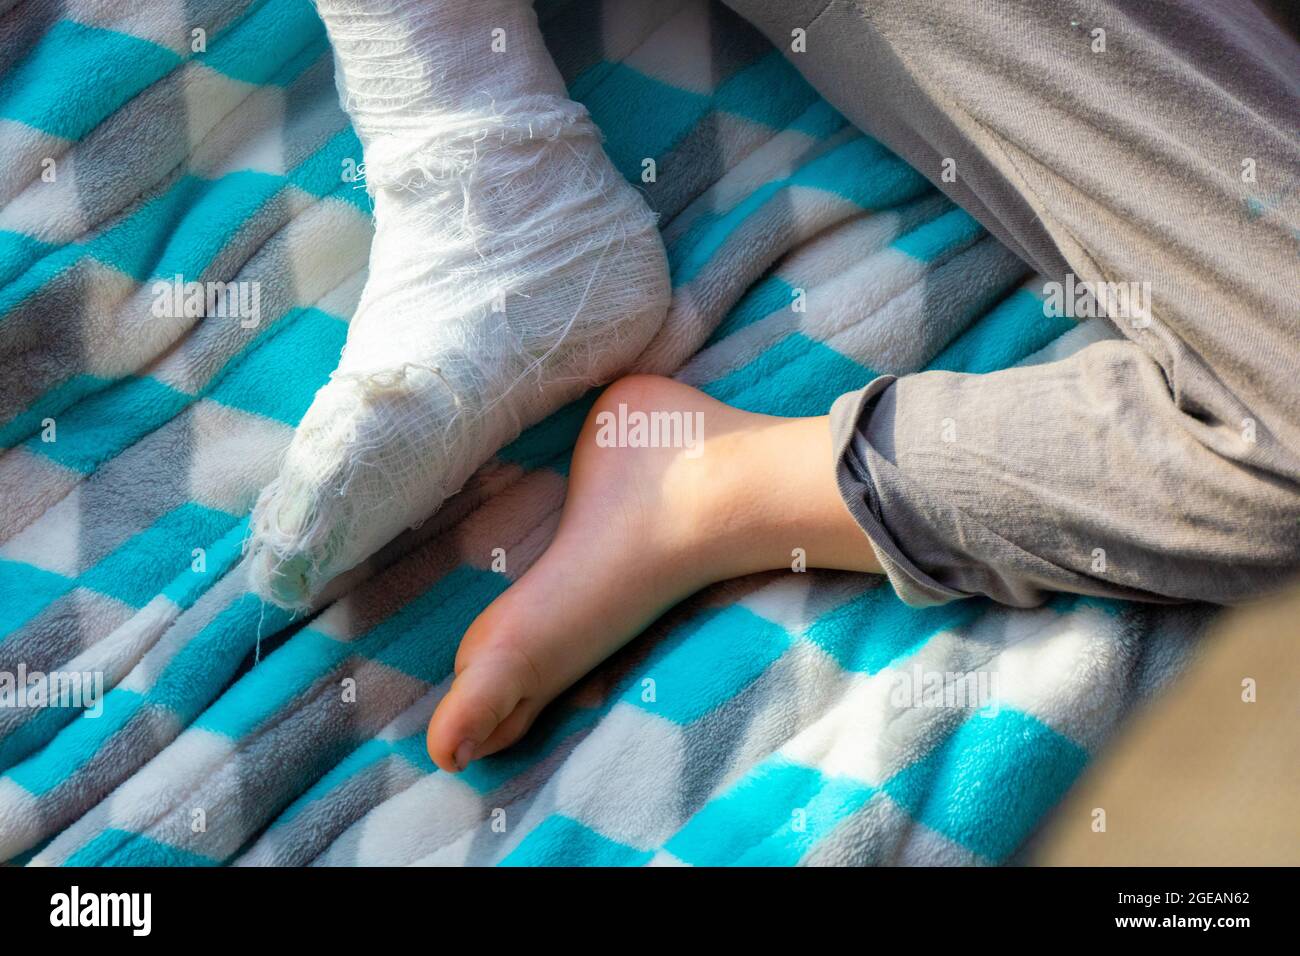 Un niño lindo tiene una pierna fracturada rota con un vendaje en